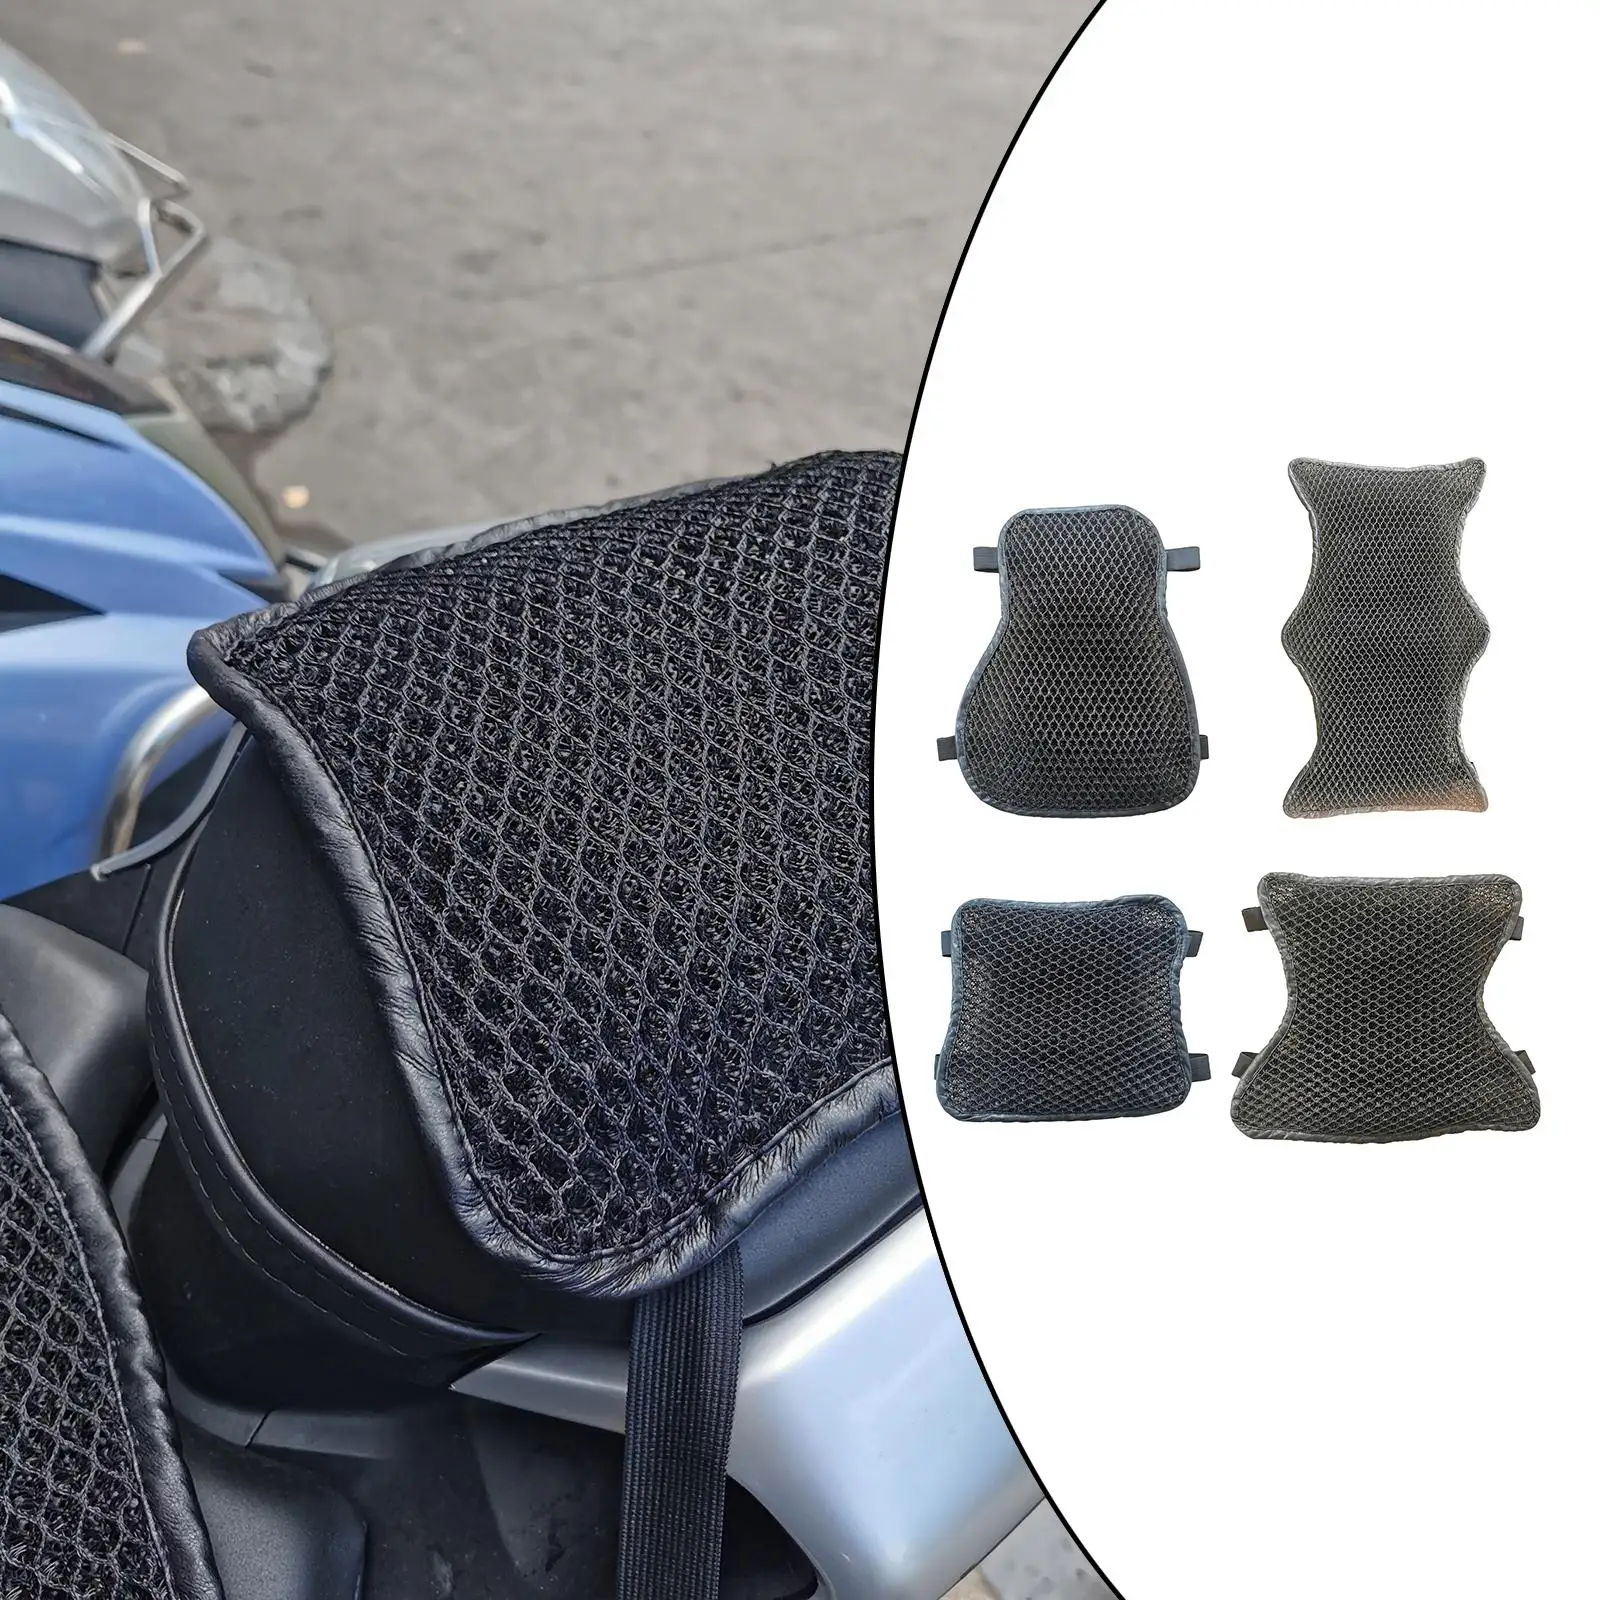 Motorcycle Seat Cushion Anti- Passenger Fit for Touring Motorbike